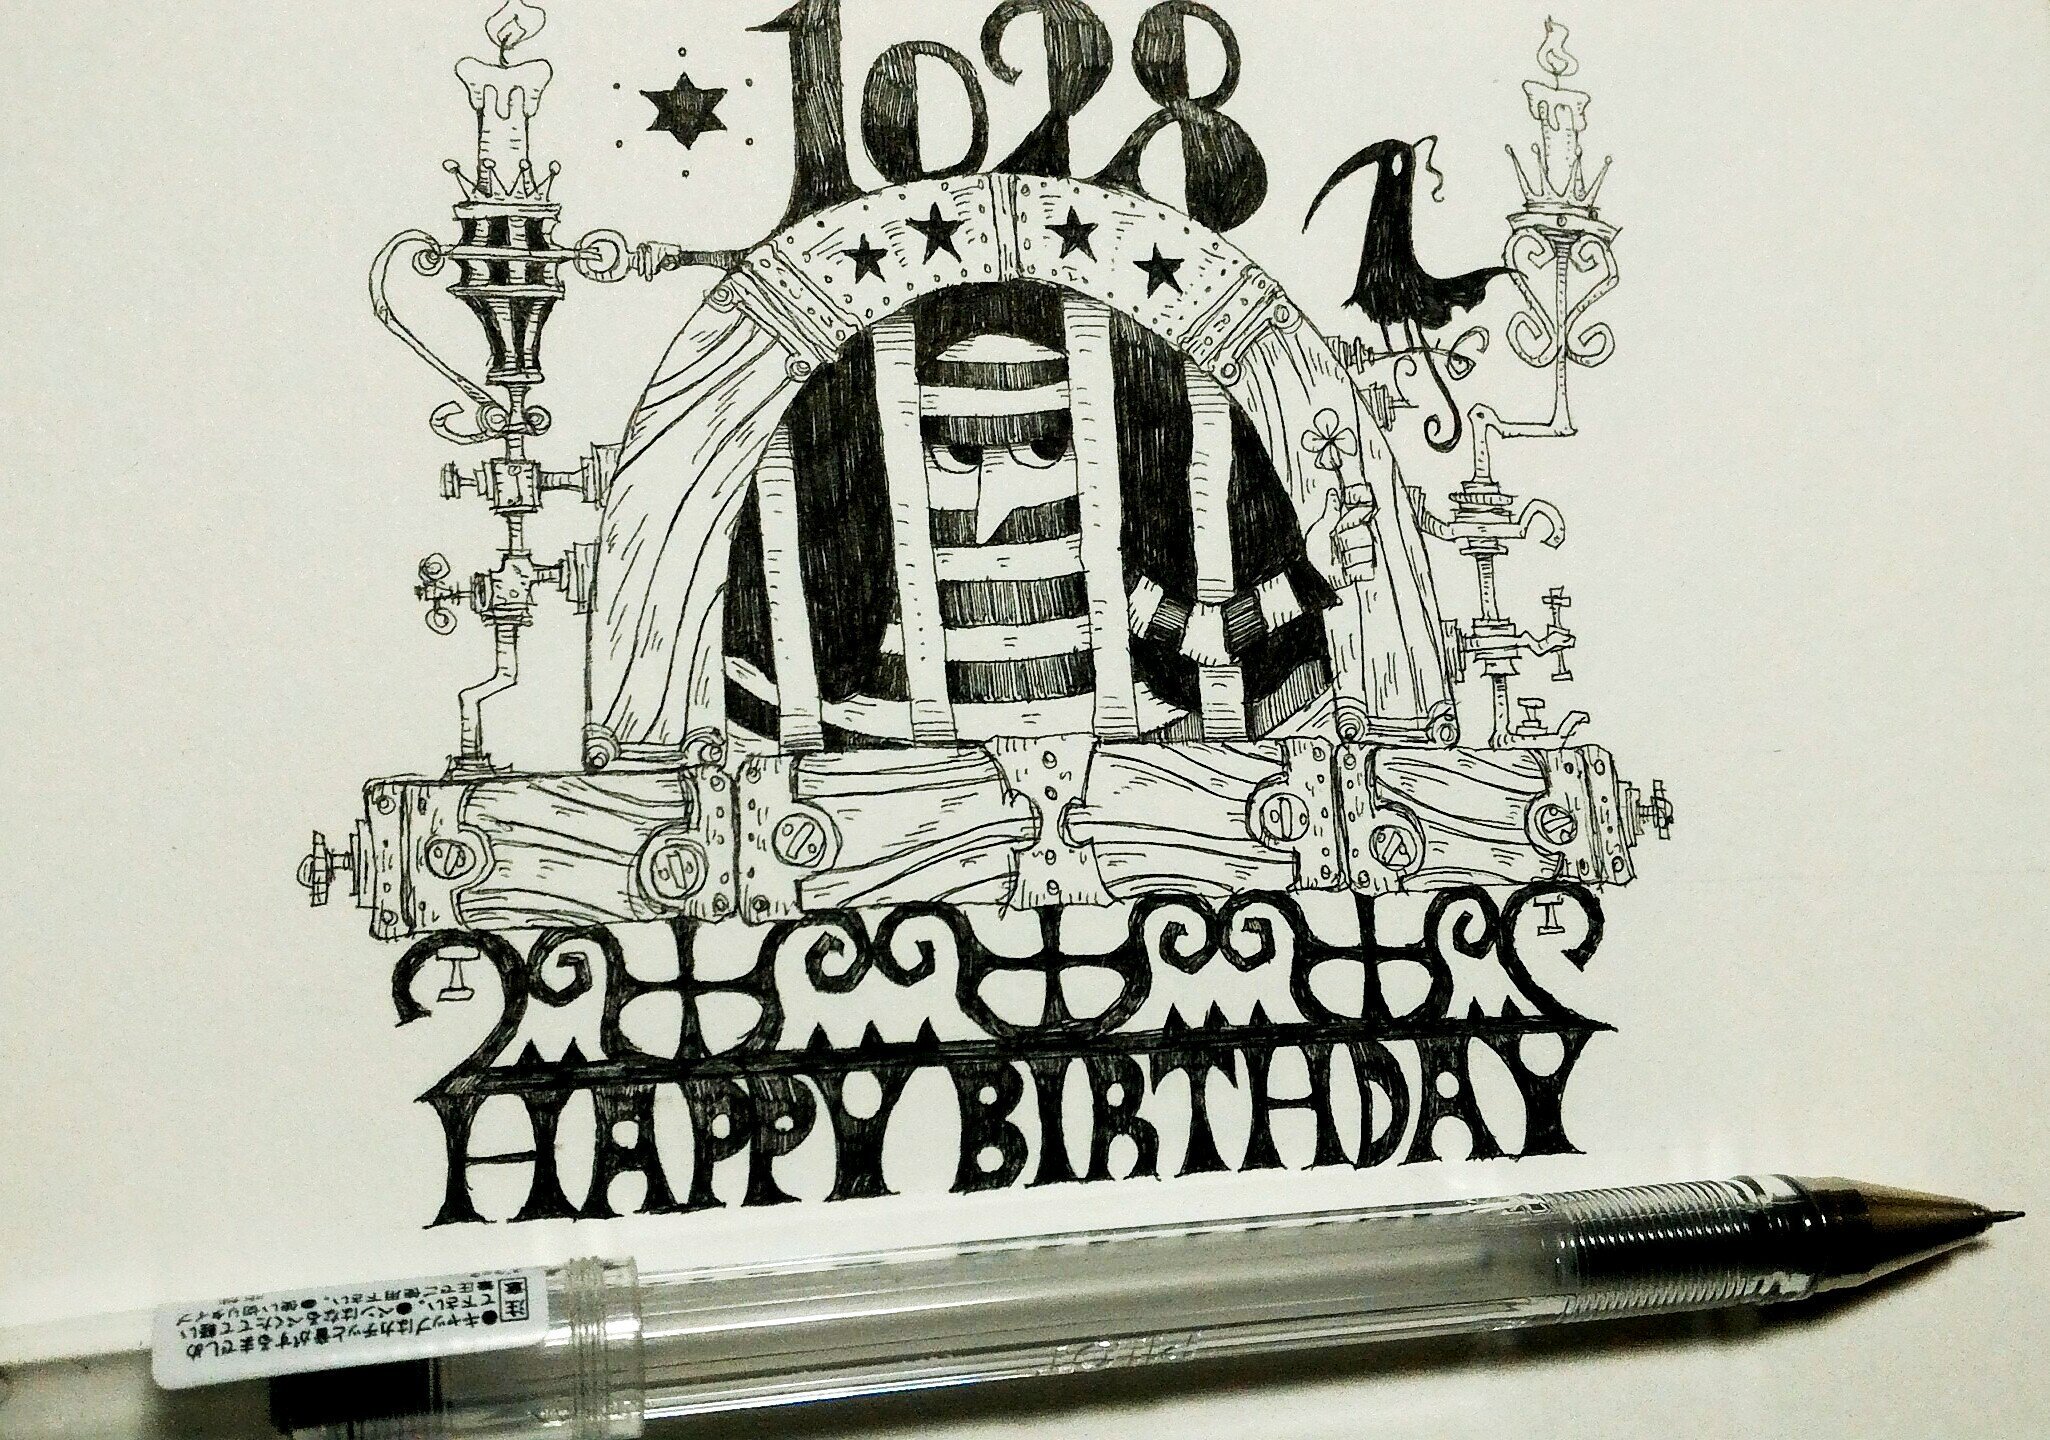 大志 毎日誰かの誕生日 10 28生まれの方 お誕生日おめでとうございます 1028 囚人 未完 誕生日 10月28日 イラスト 絵 アナログ ボールペン画 線画 モノクロ ボールペン 窓 Birthday Happybirthday 手描き T Co Nieyelniia